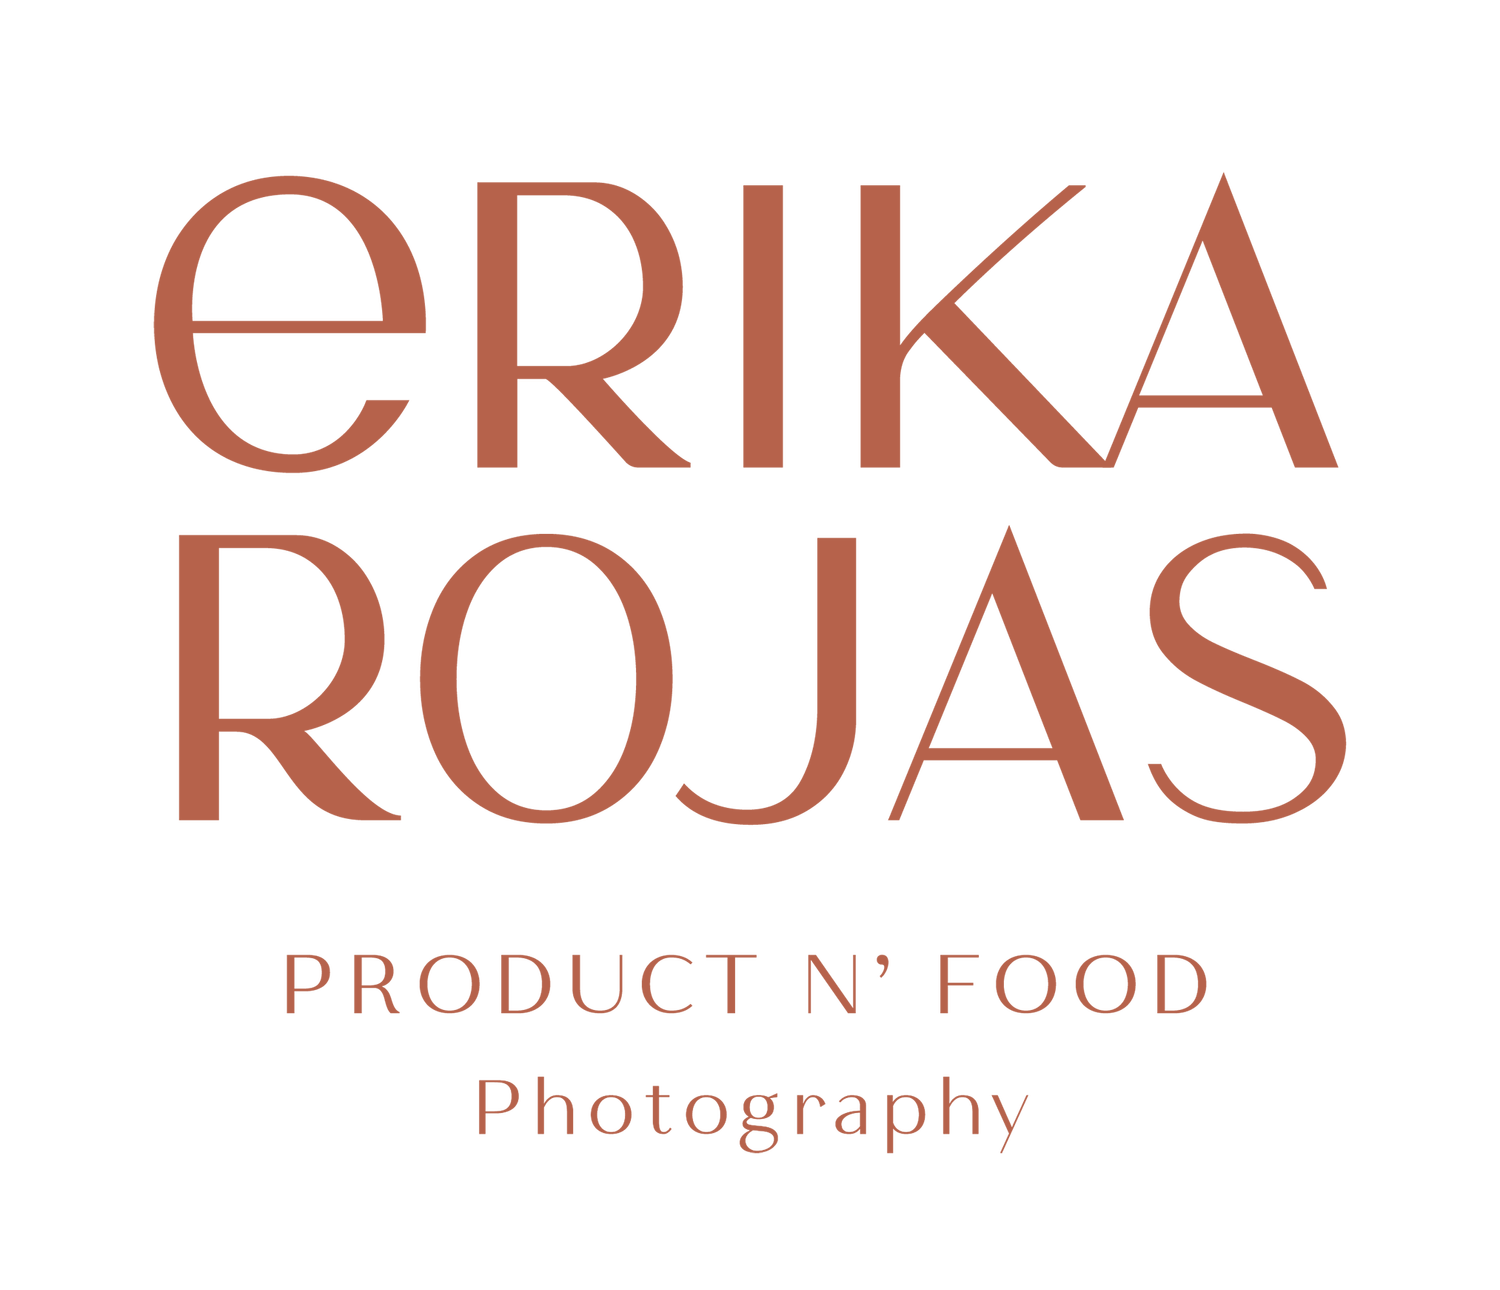 Erika Rojas Photography 